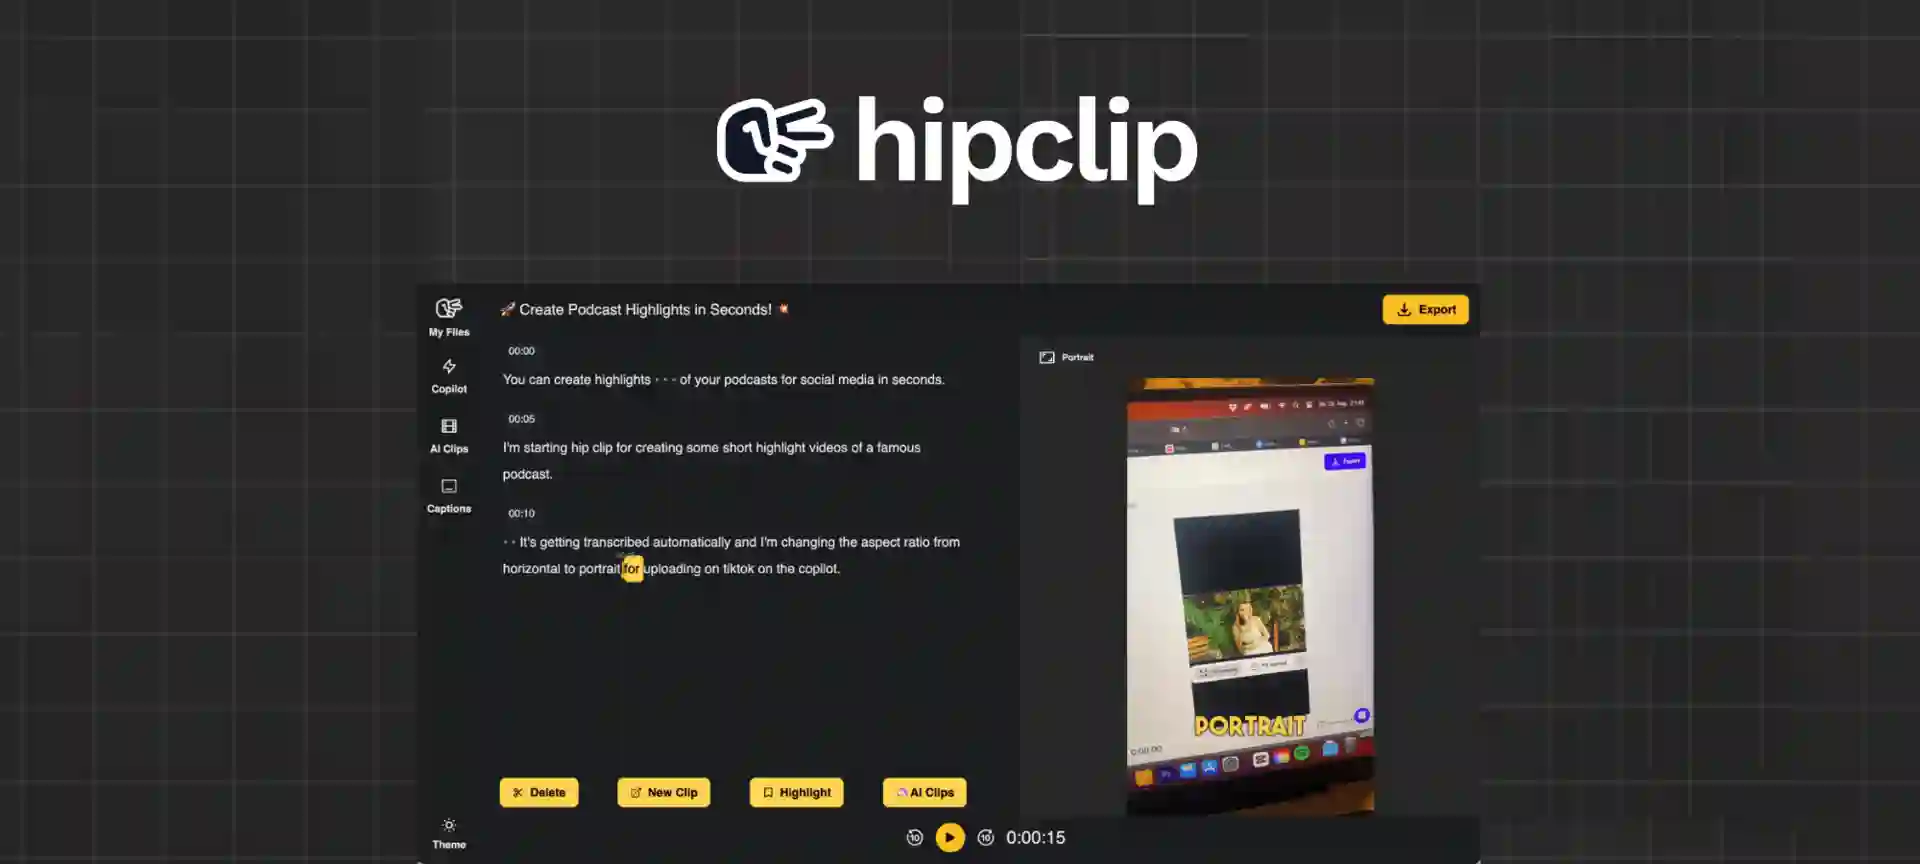 Hipclip Lifetime Deal